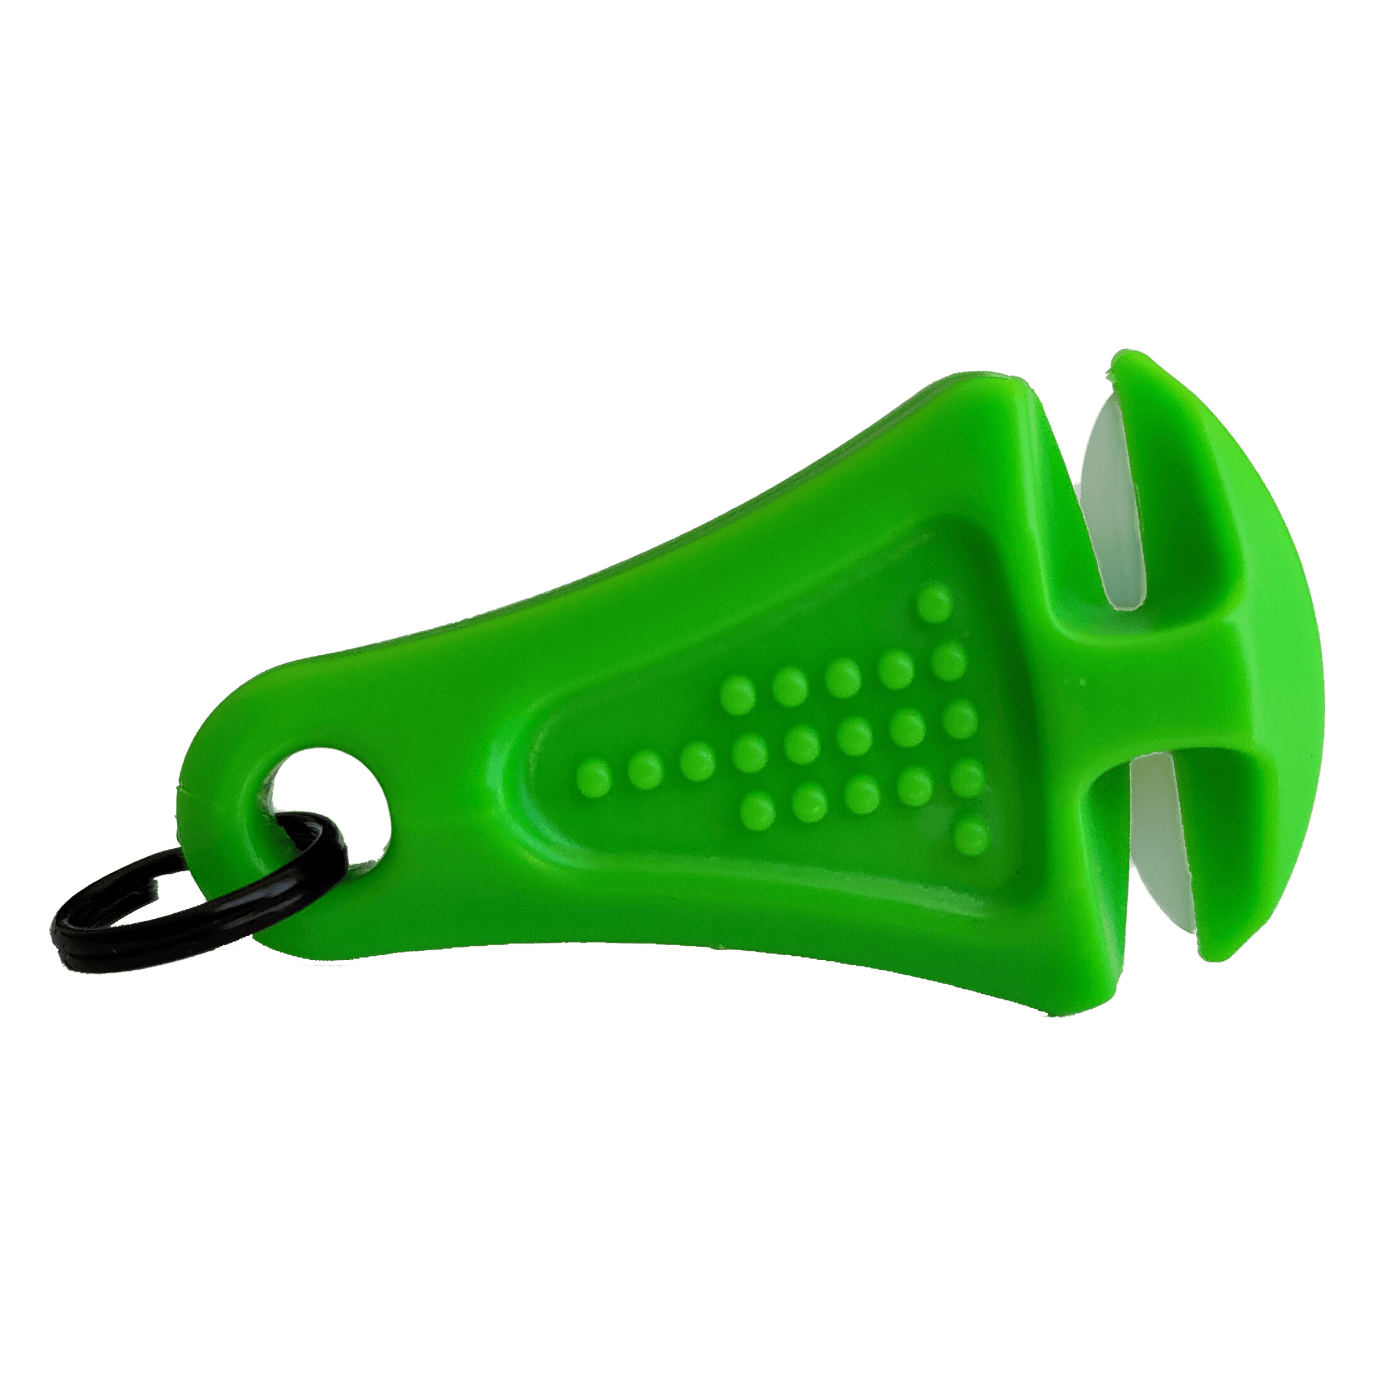 Line Cutterz Ceramic Blade Zipper Pull Cutter - Green Zipper Pull Line Cutterz 